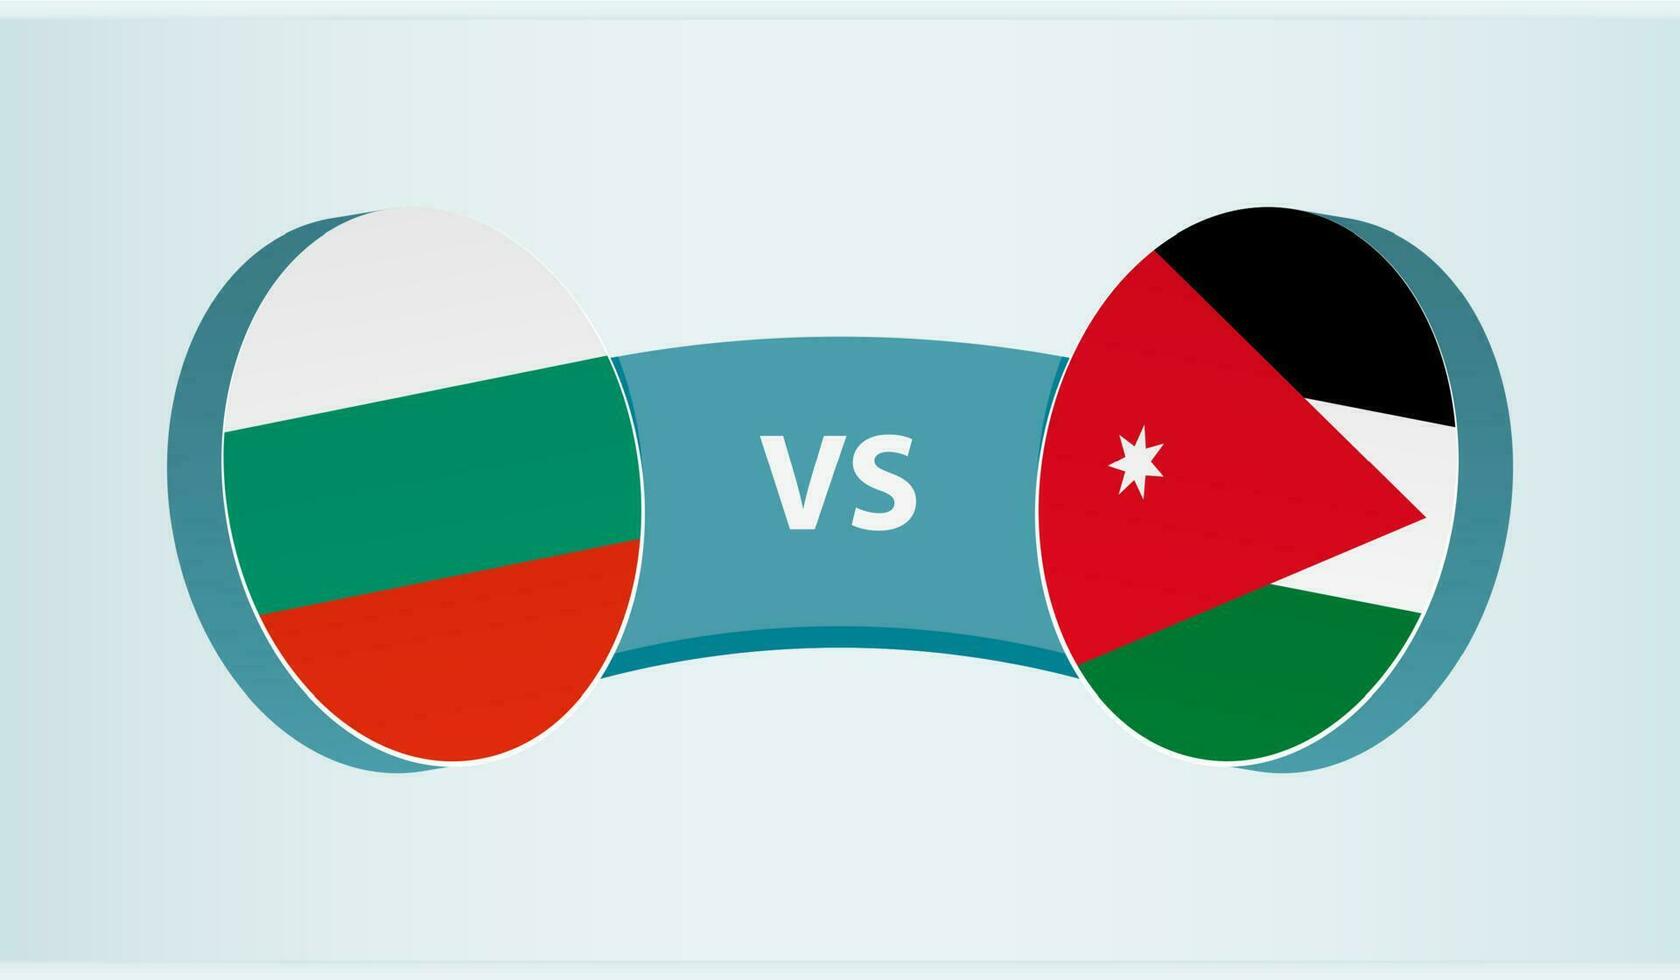 Bulgária versus Jordânia, equipe Esportes concorrência conceito. vetor